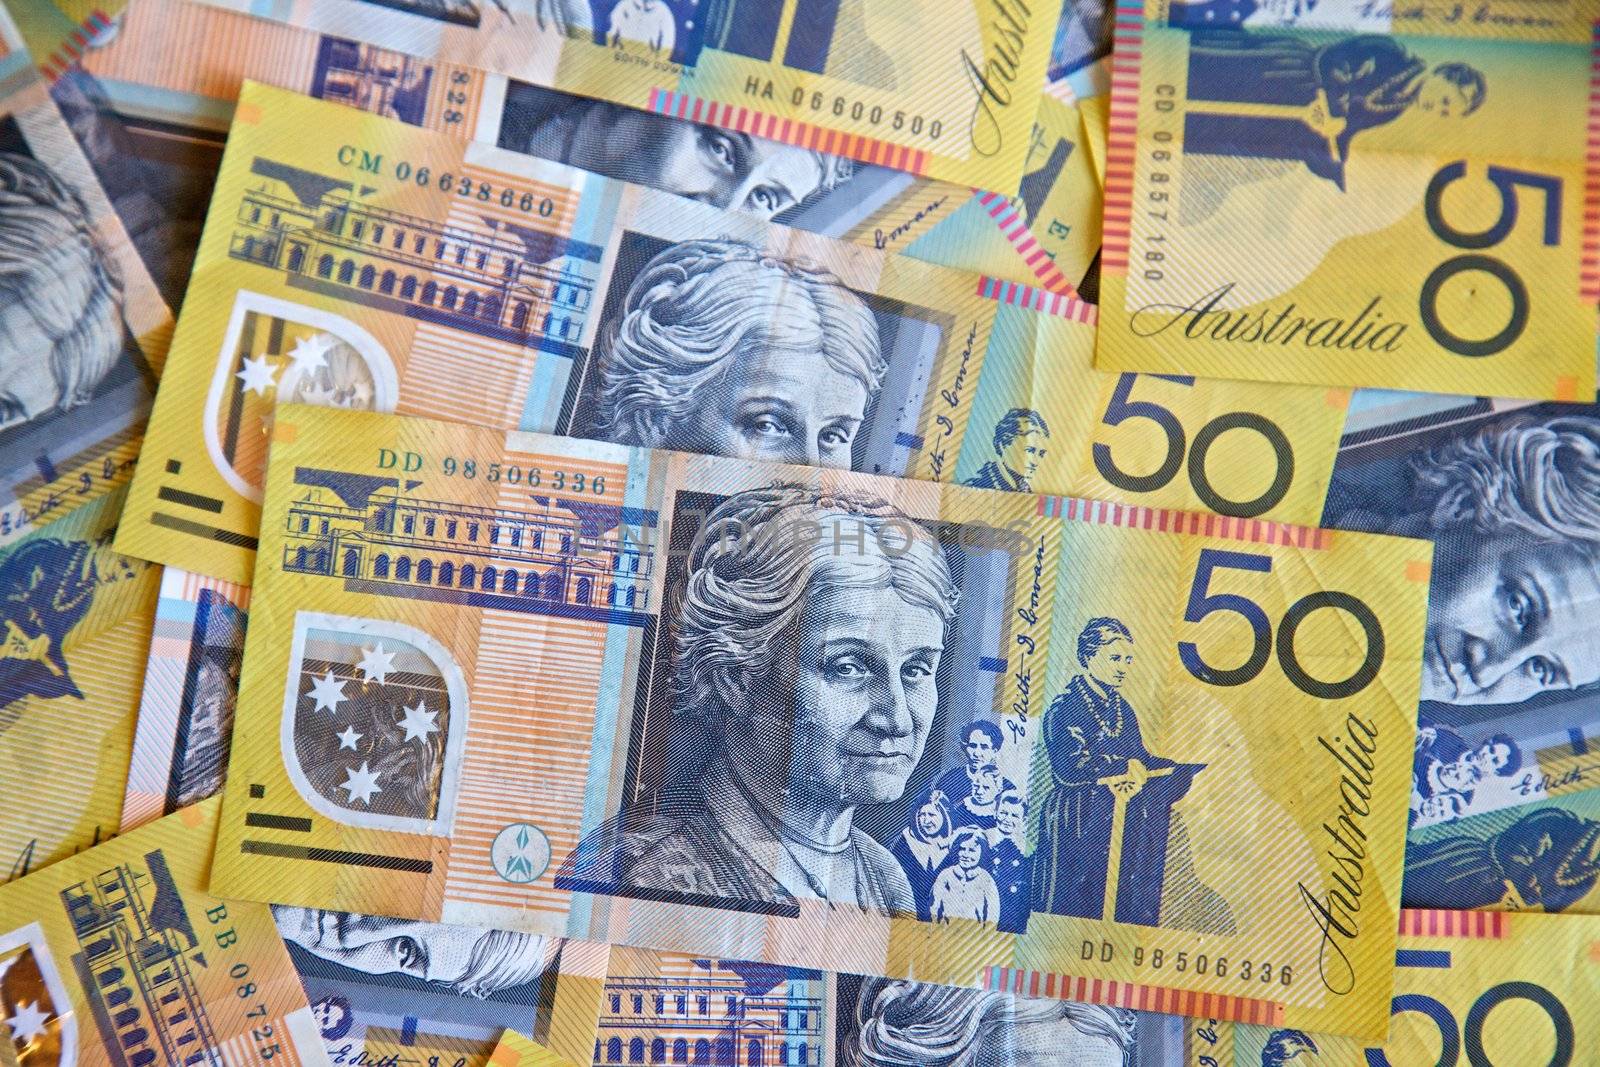 Australian dollars by instinia